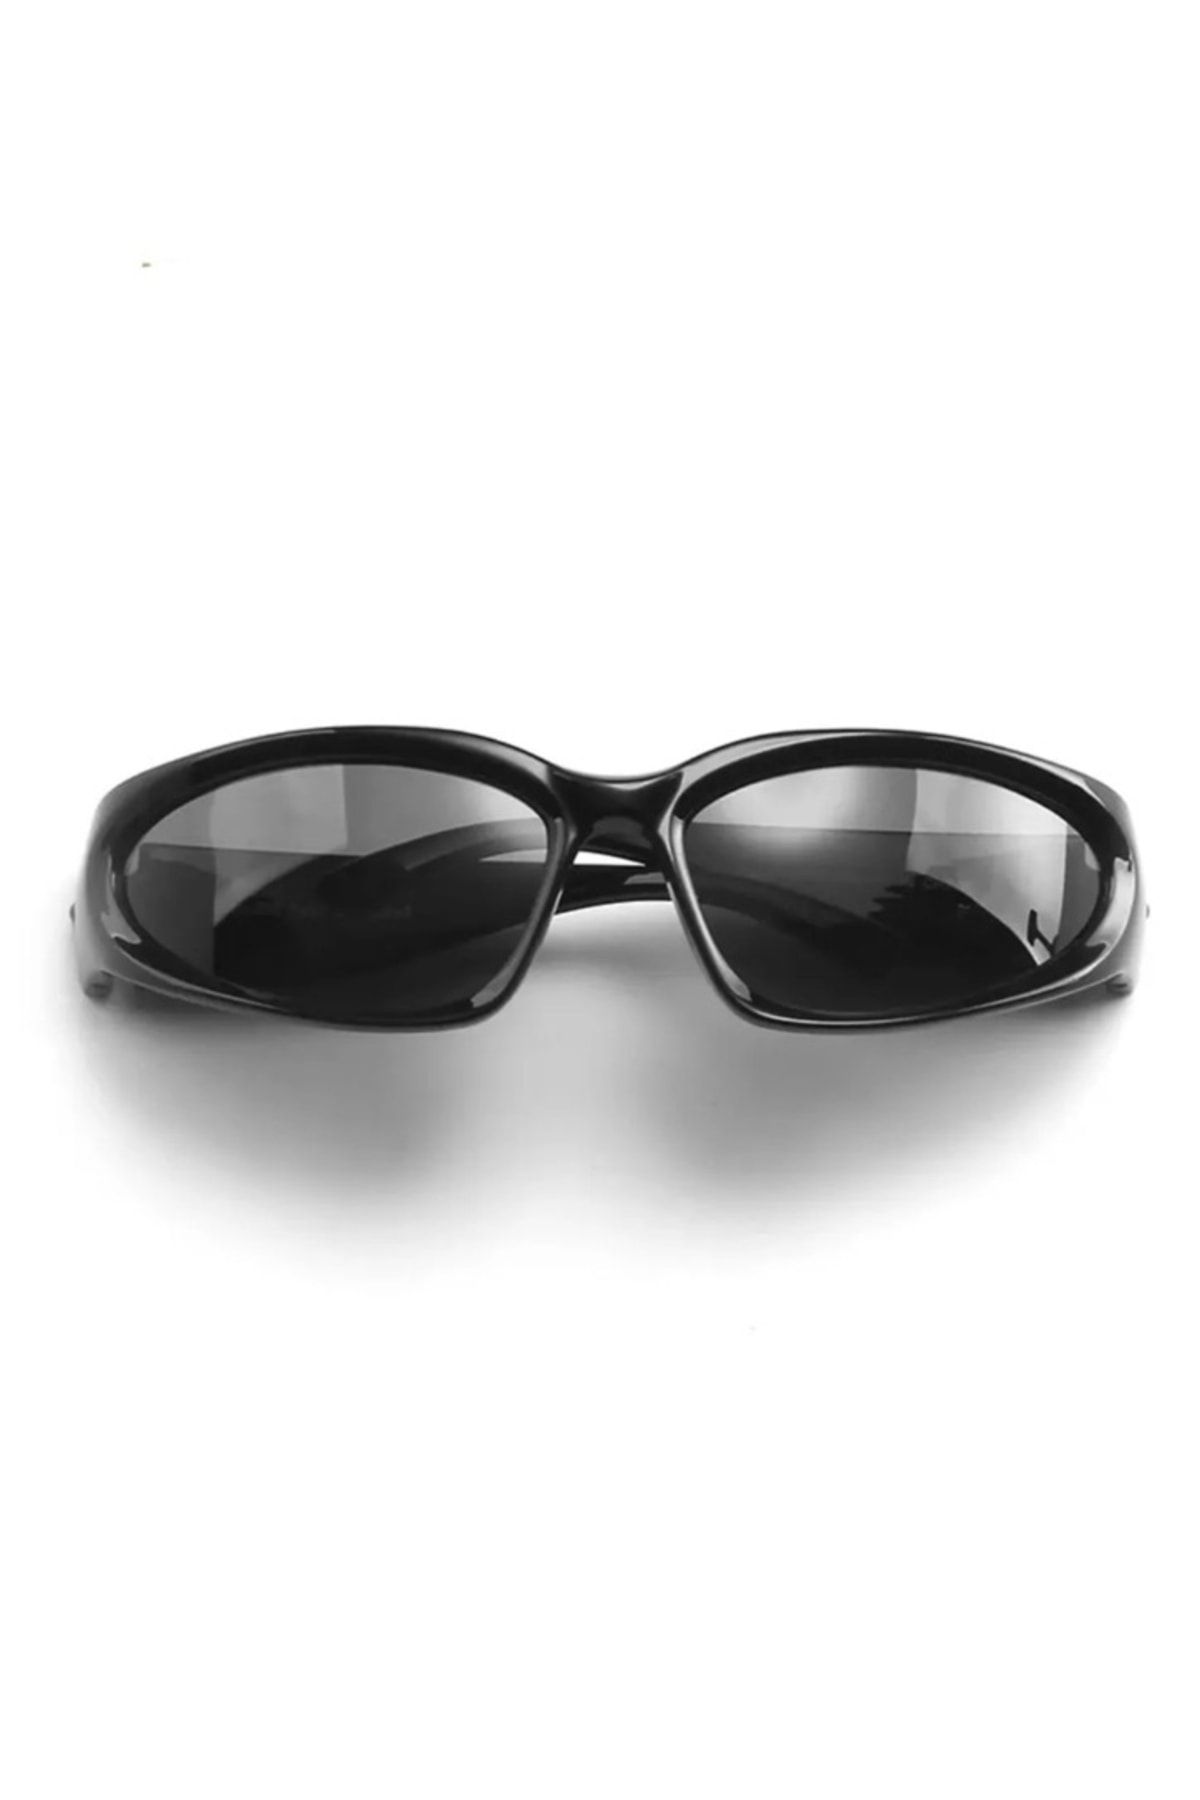 LOOKUP Siyah Kare Dikdörtgen Vintage-retro Unisex Güneş Gözlüğü